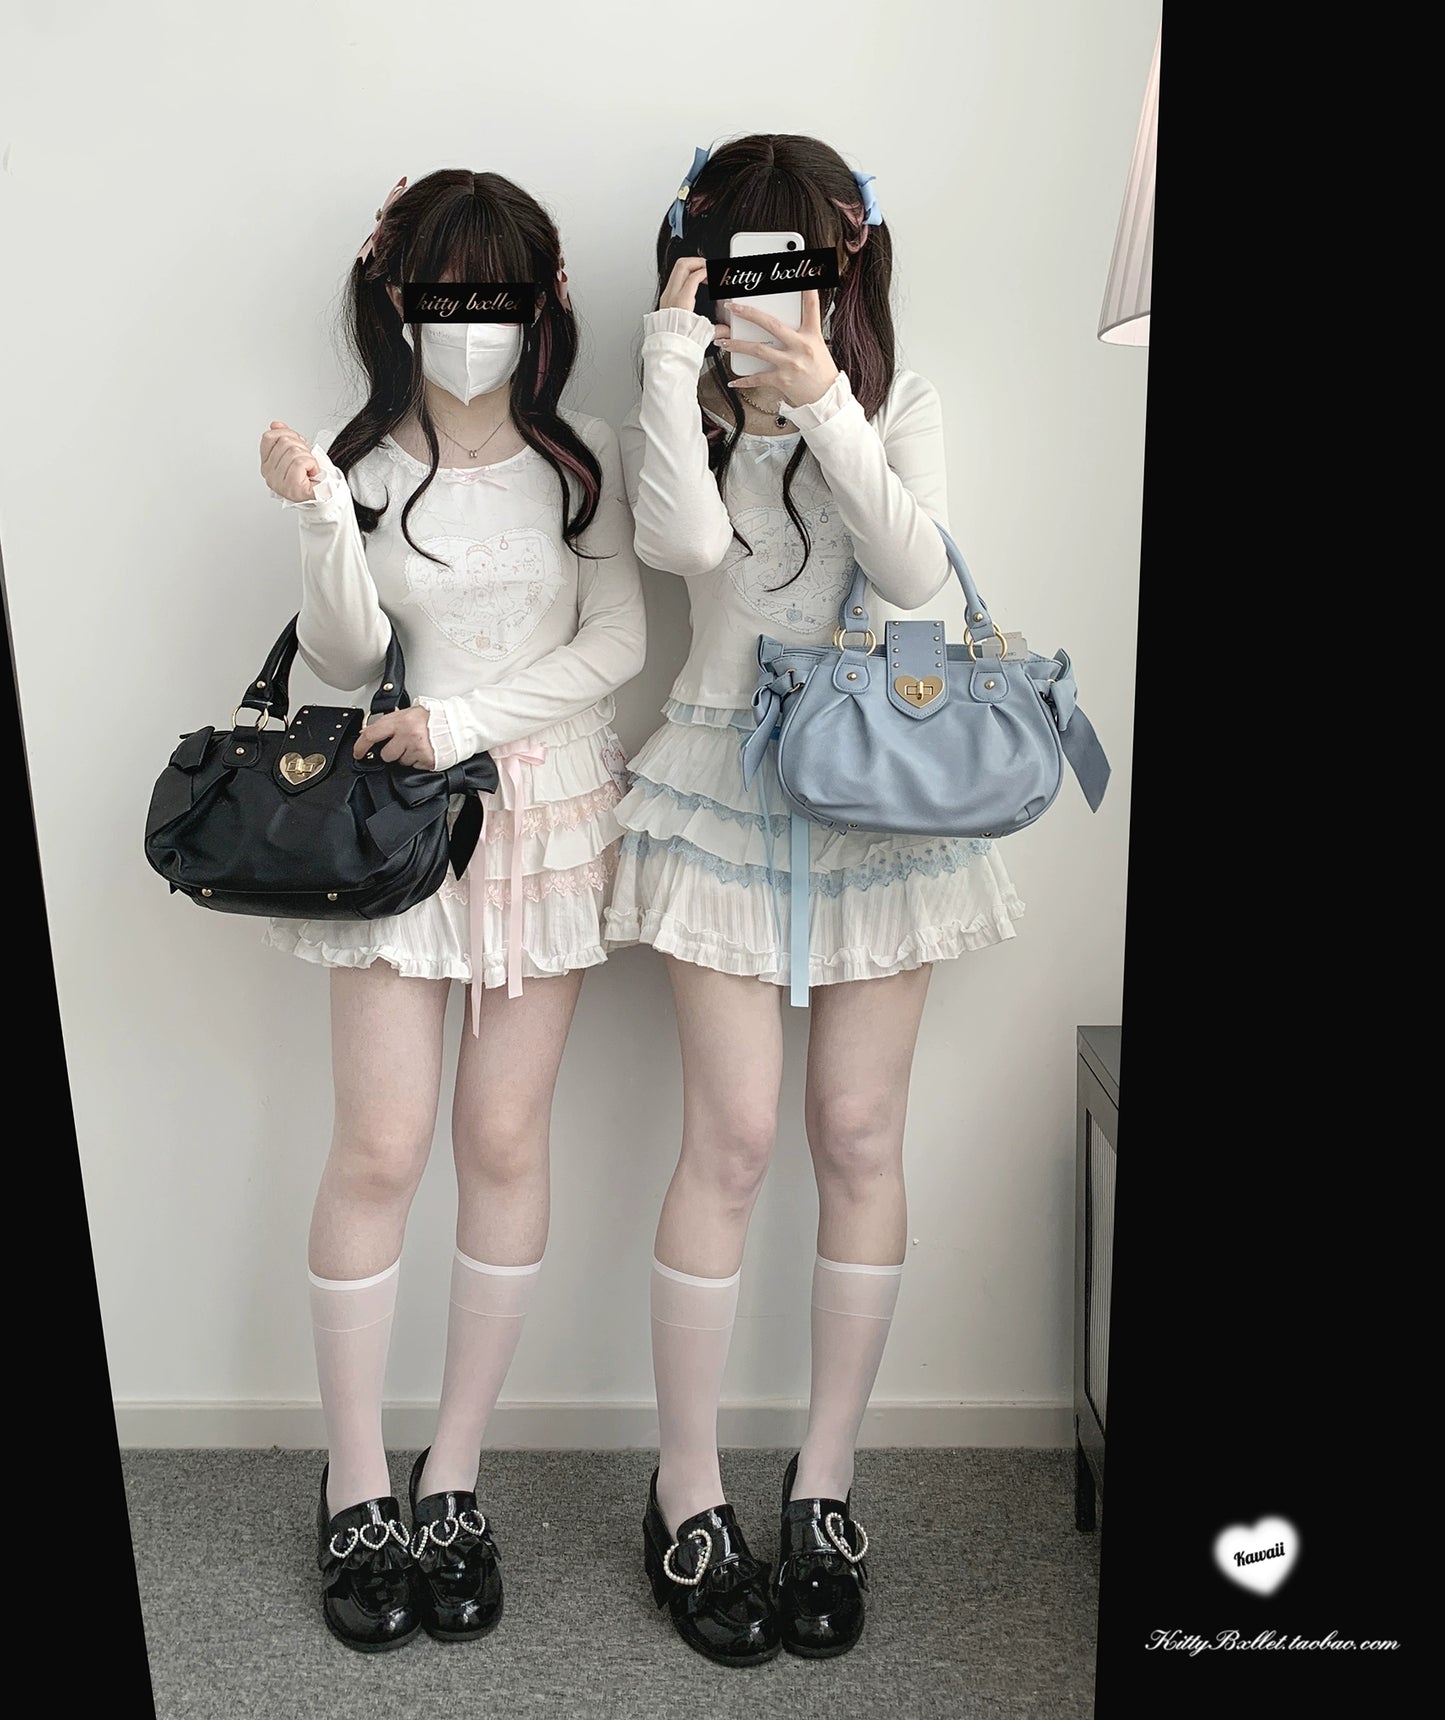 Ryousangata Skirt Lace Cake Skirt And Apron Set 36790:536192